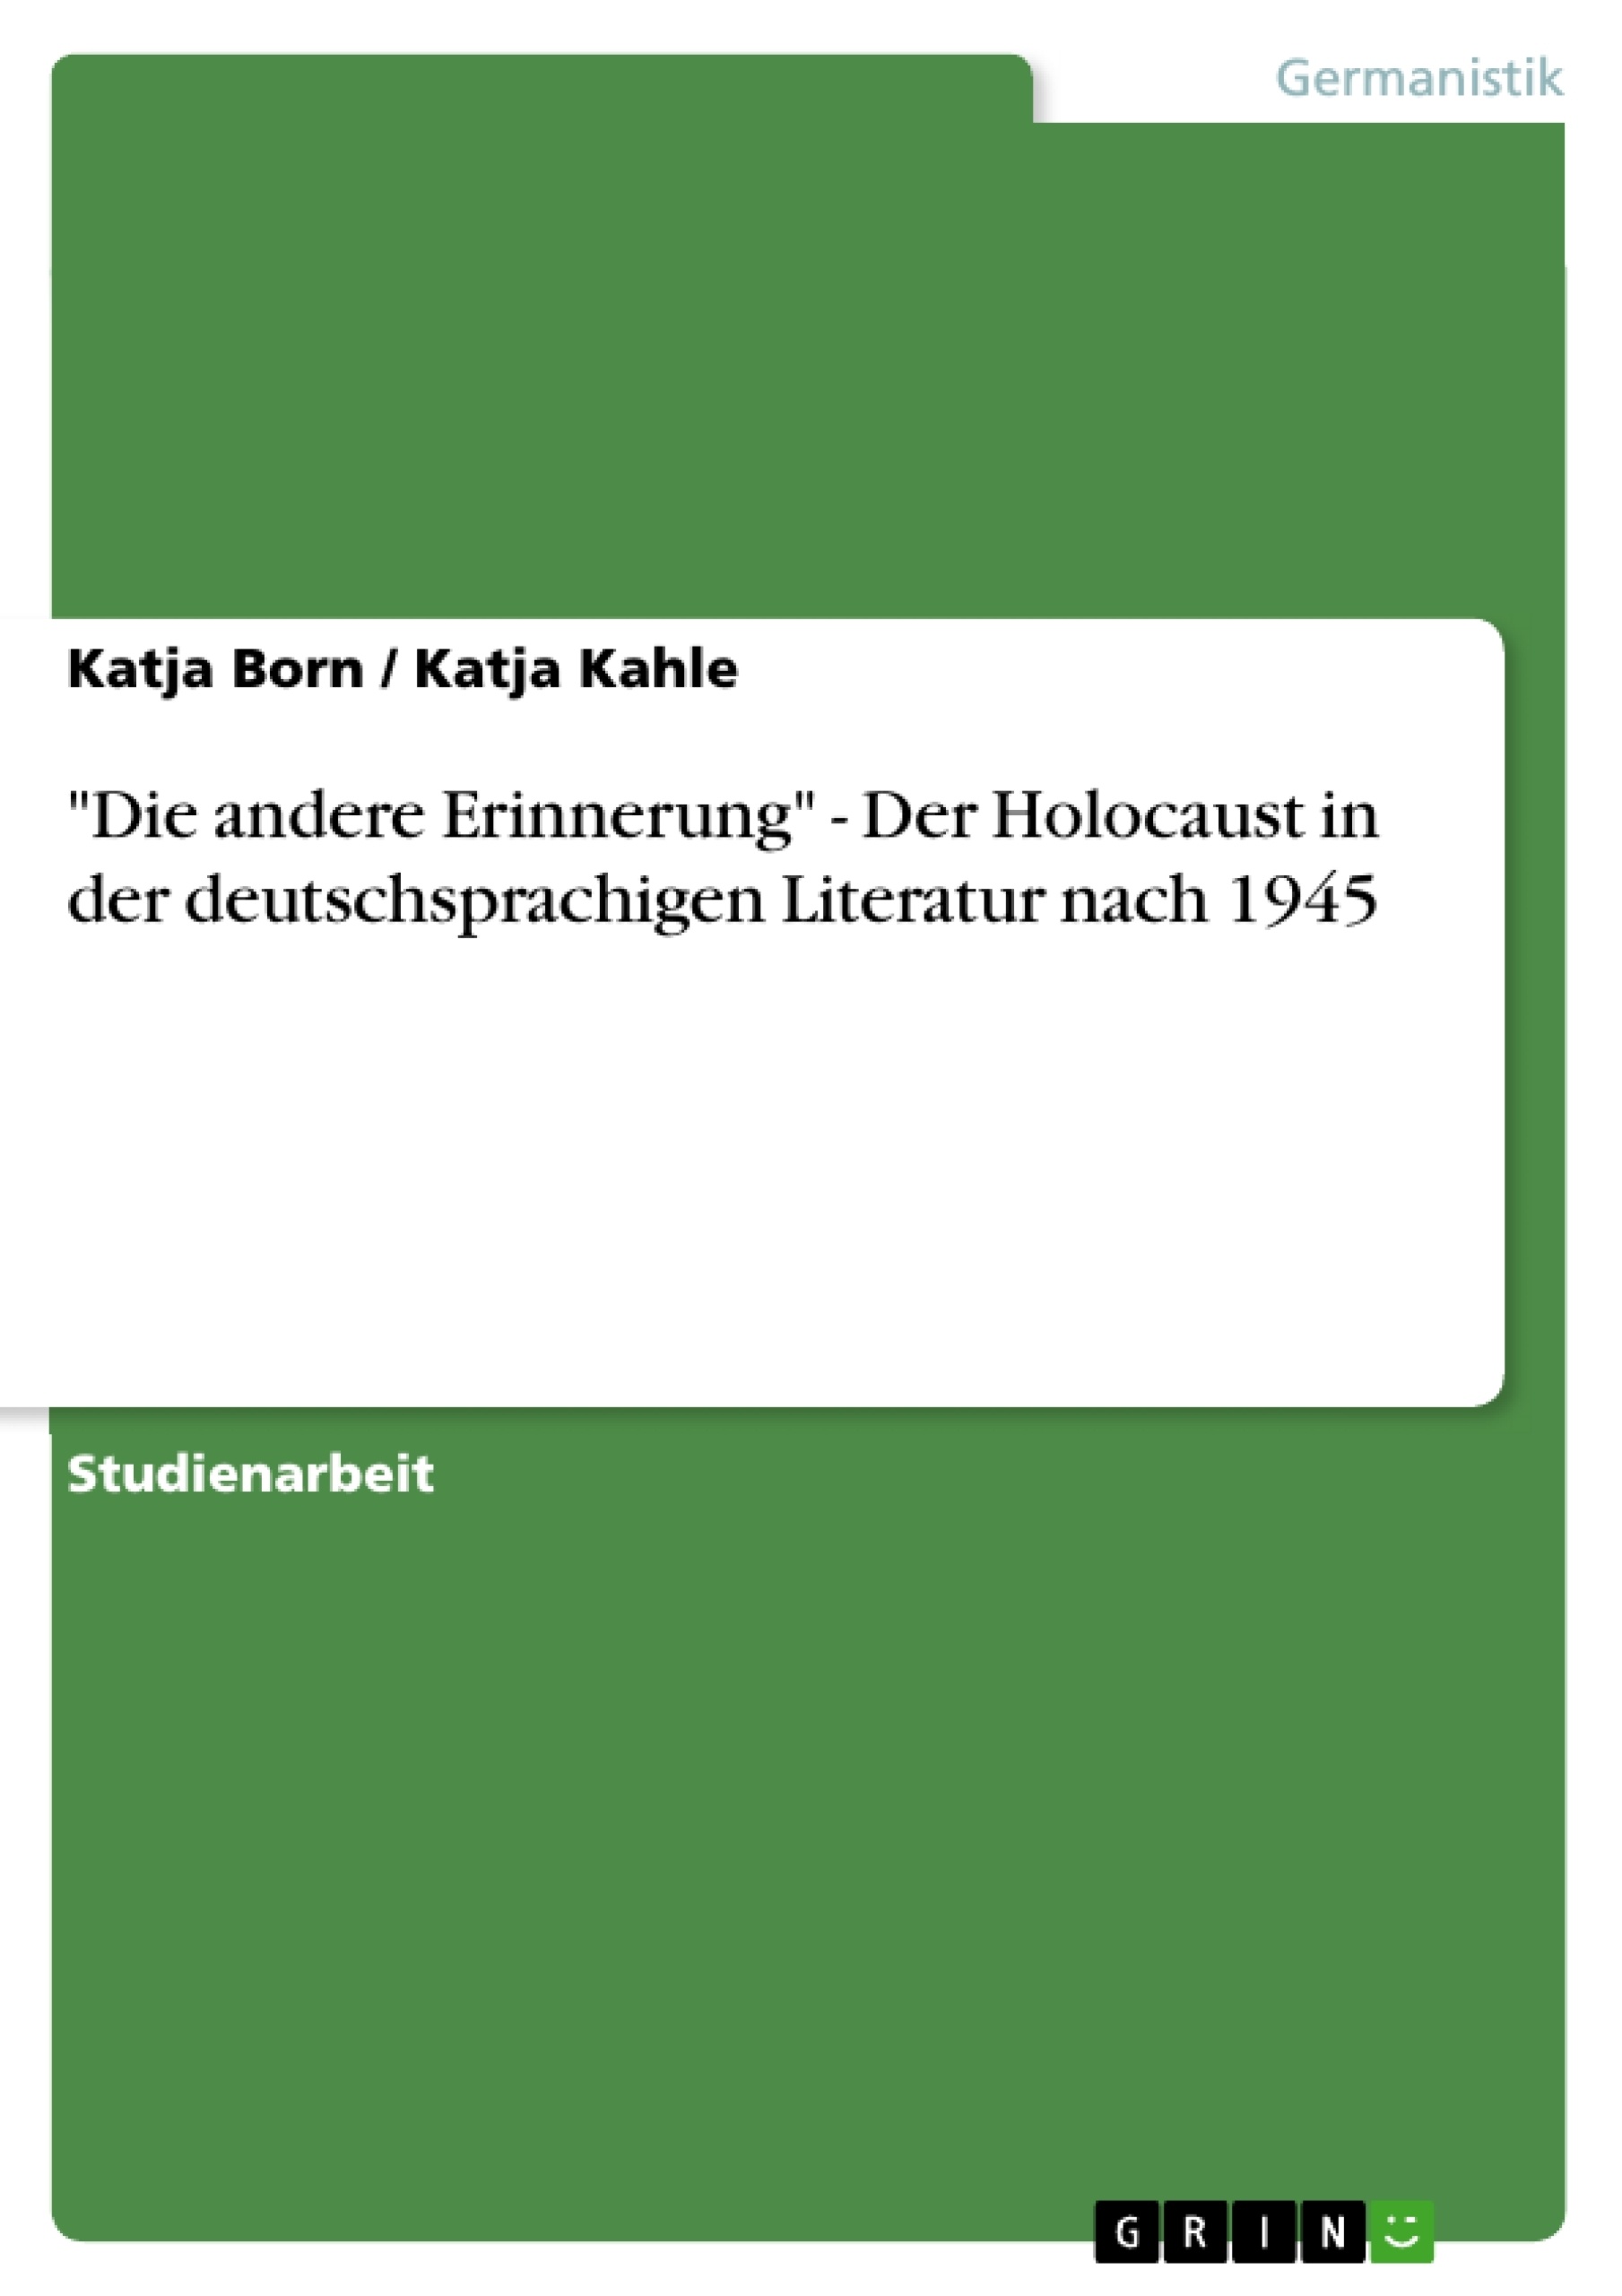 Titre: "Die andere Erinnerung" - Der Holocaust in der deutschsprachigen Literatur nach 1945